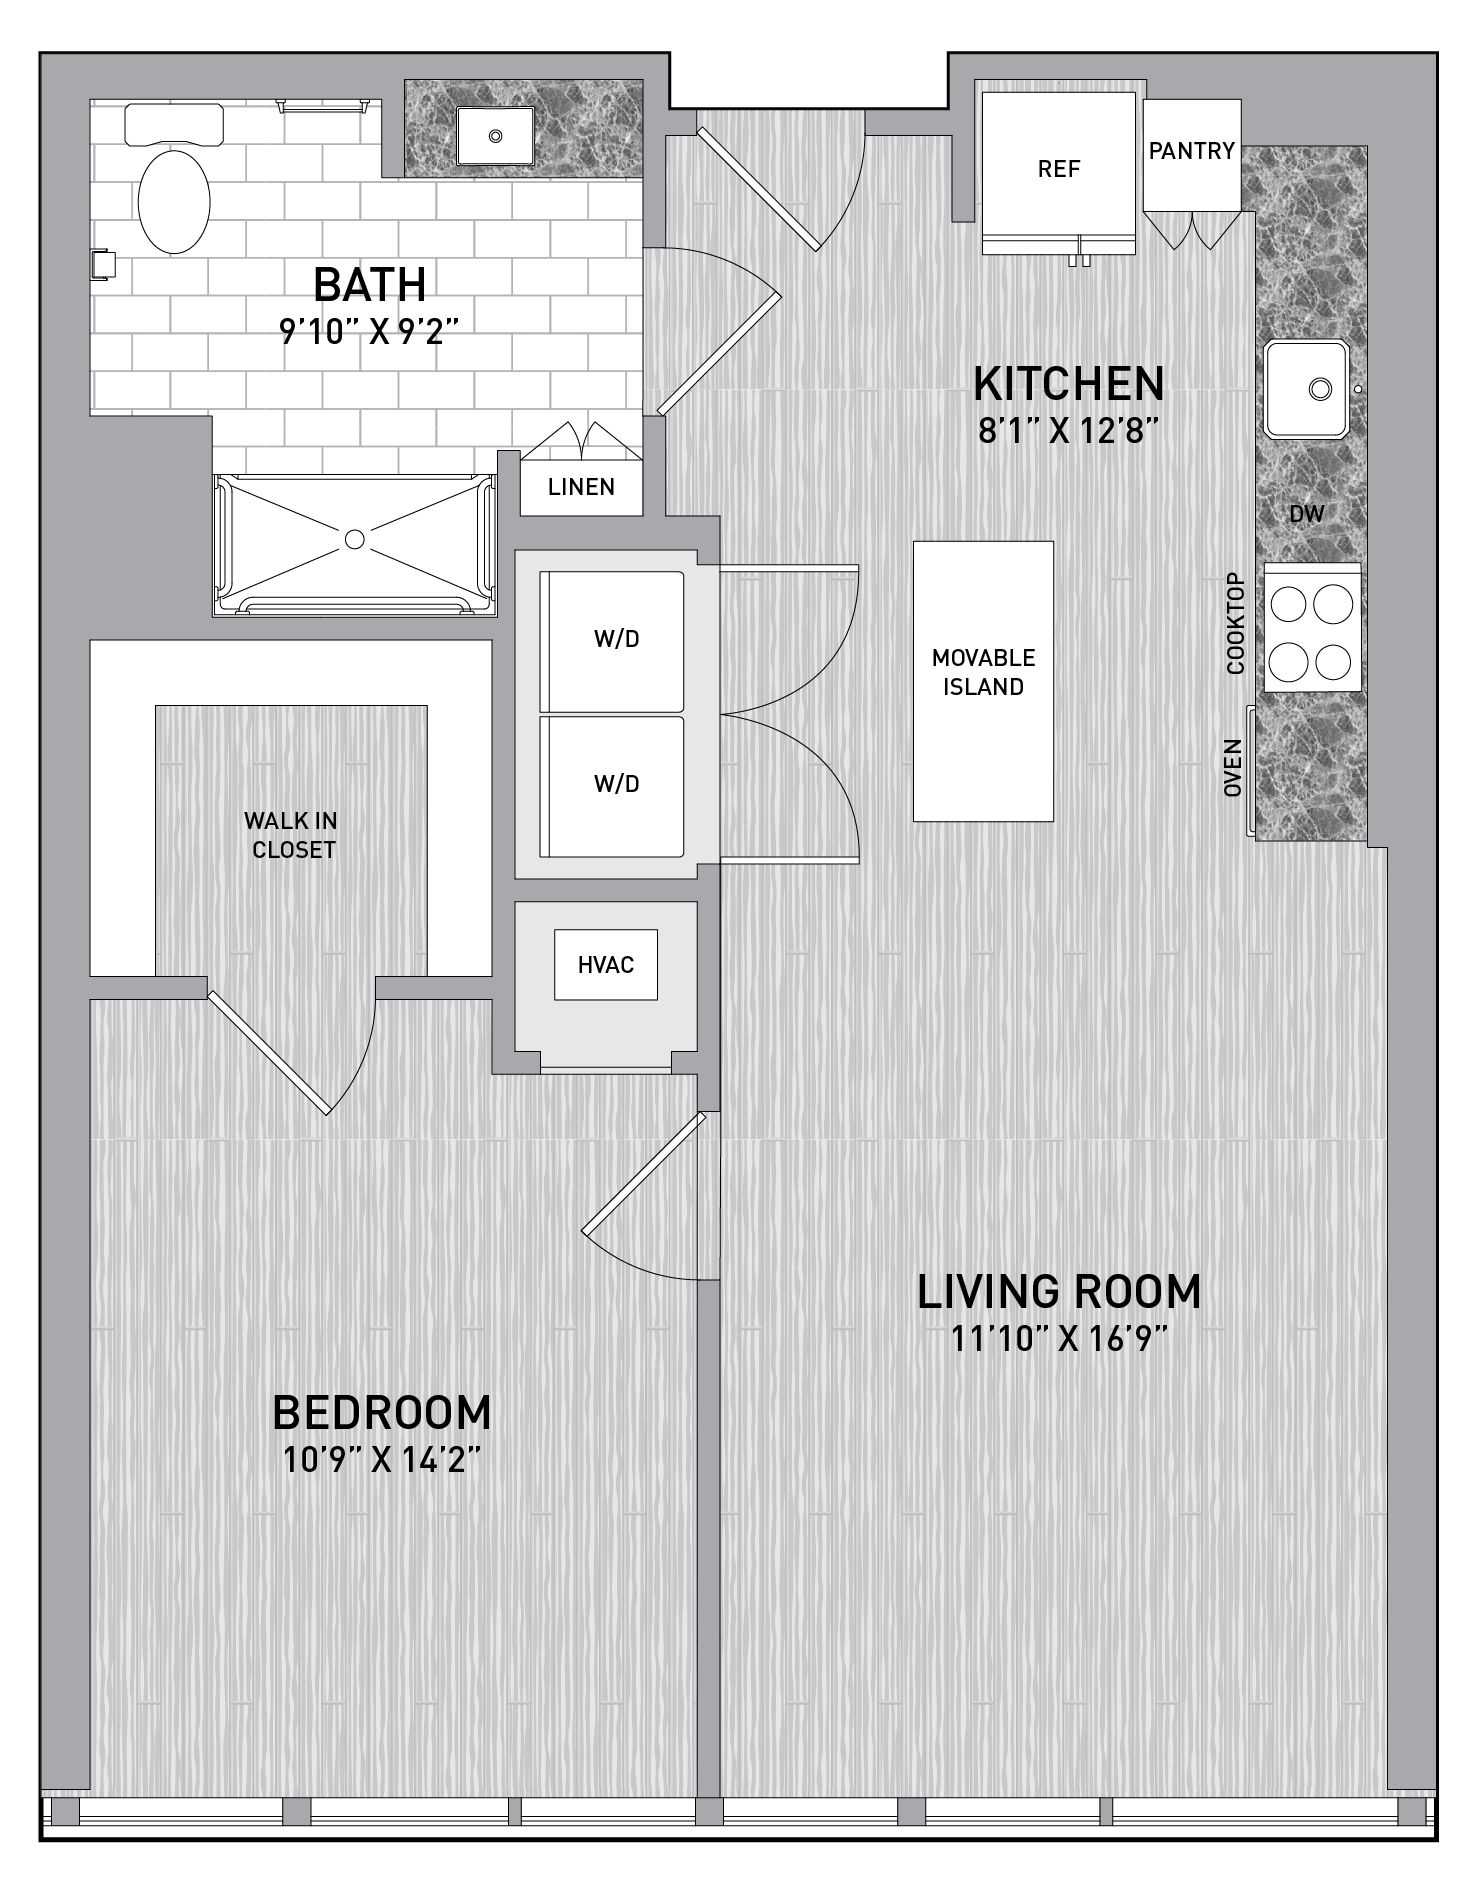 floorplan image of unit id 1012